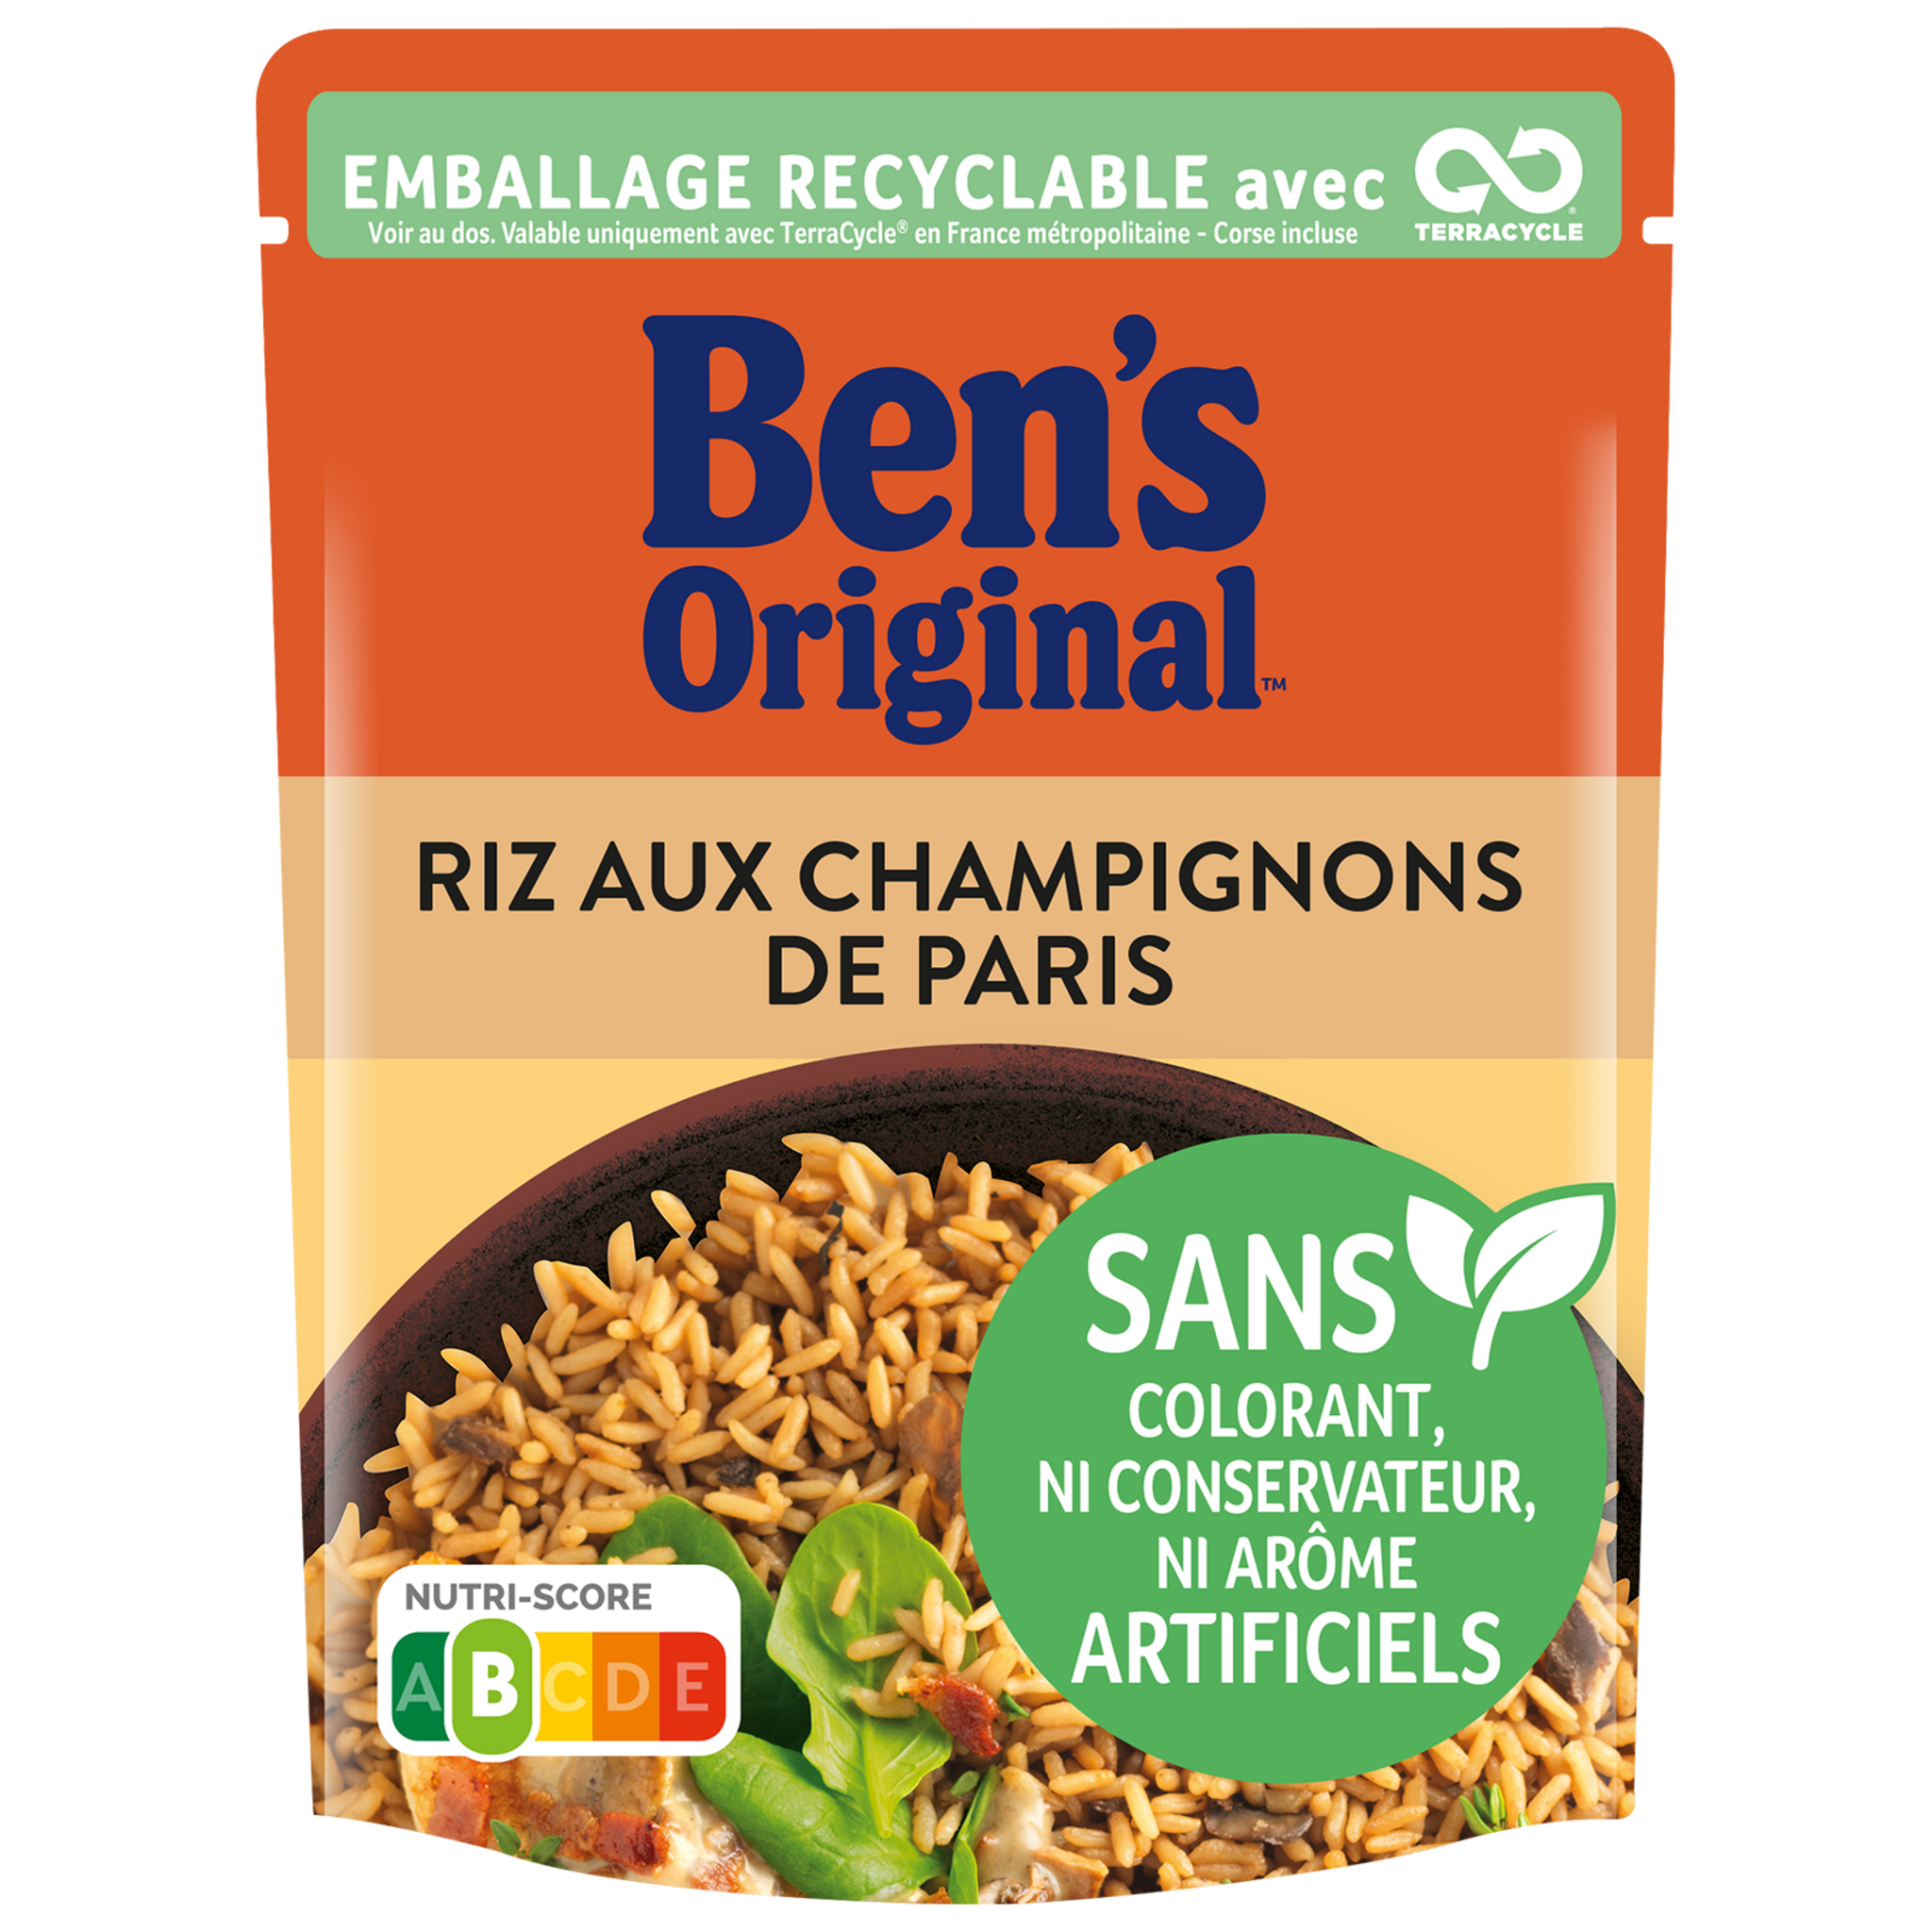 BEN'S ORIGINAL Riz aux champignons de Paris sachet recyclable prêt en 2  minutes 1 personne 250g pas cher 